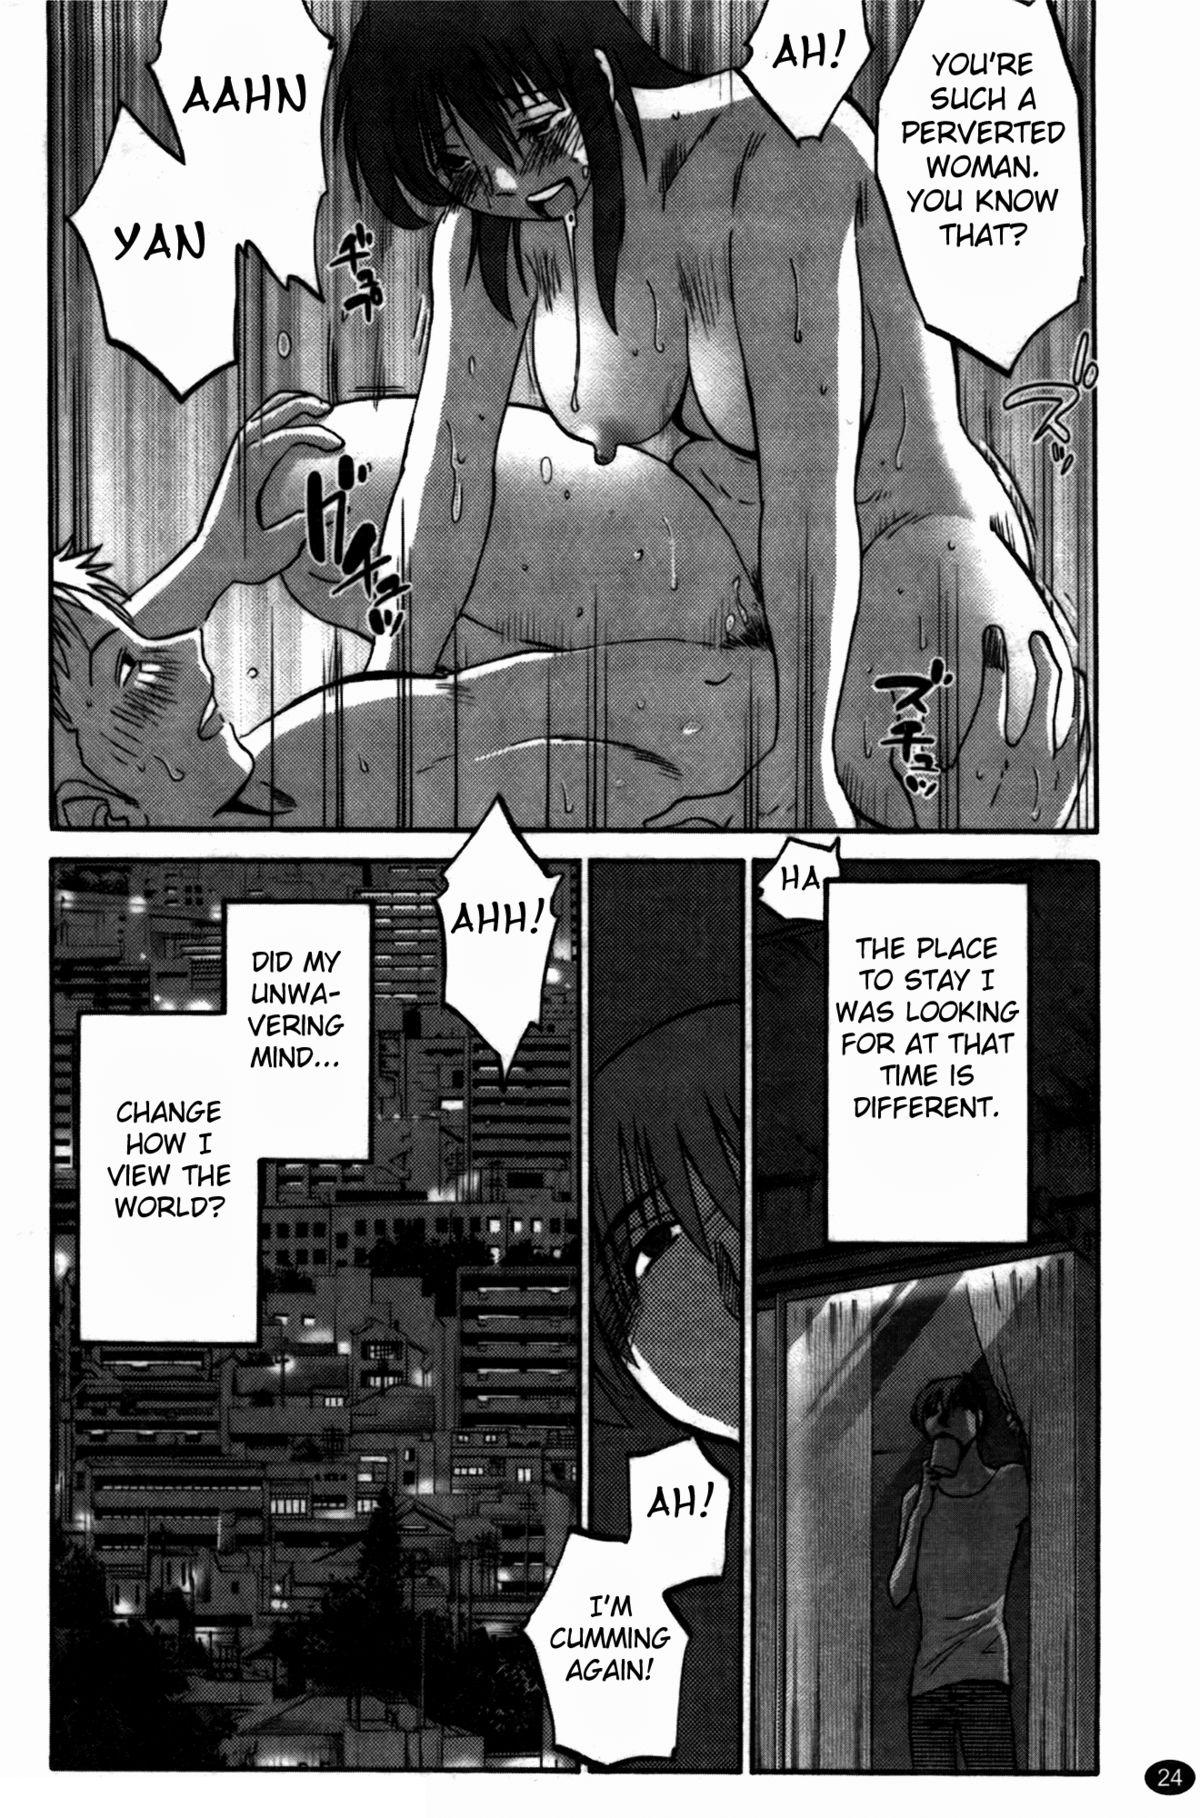 Monokage no Irisu Volume 3 Chapter 17 24